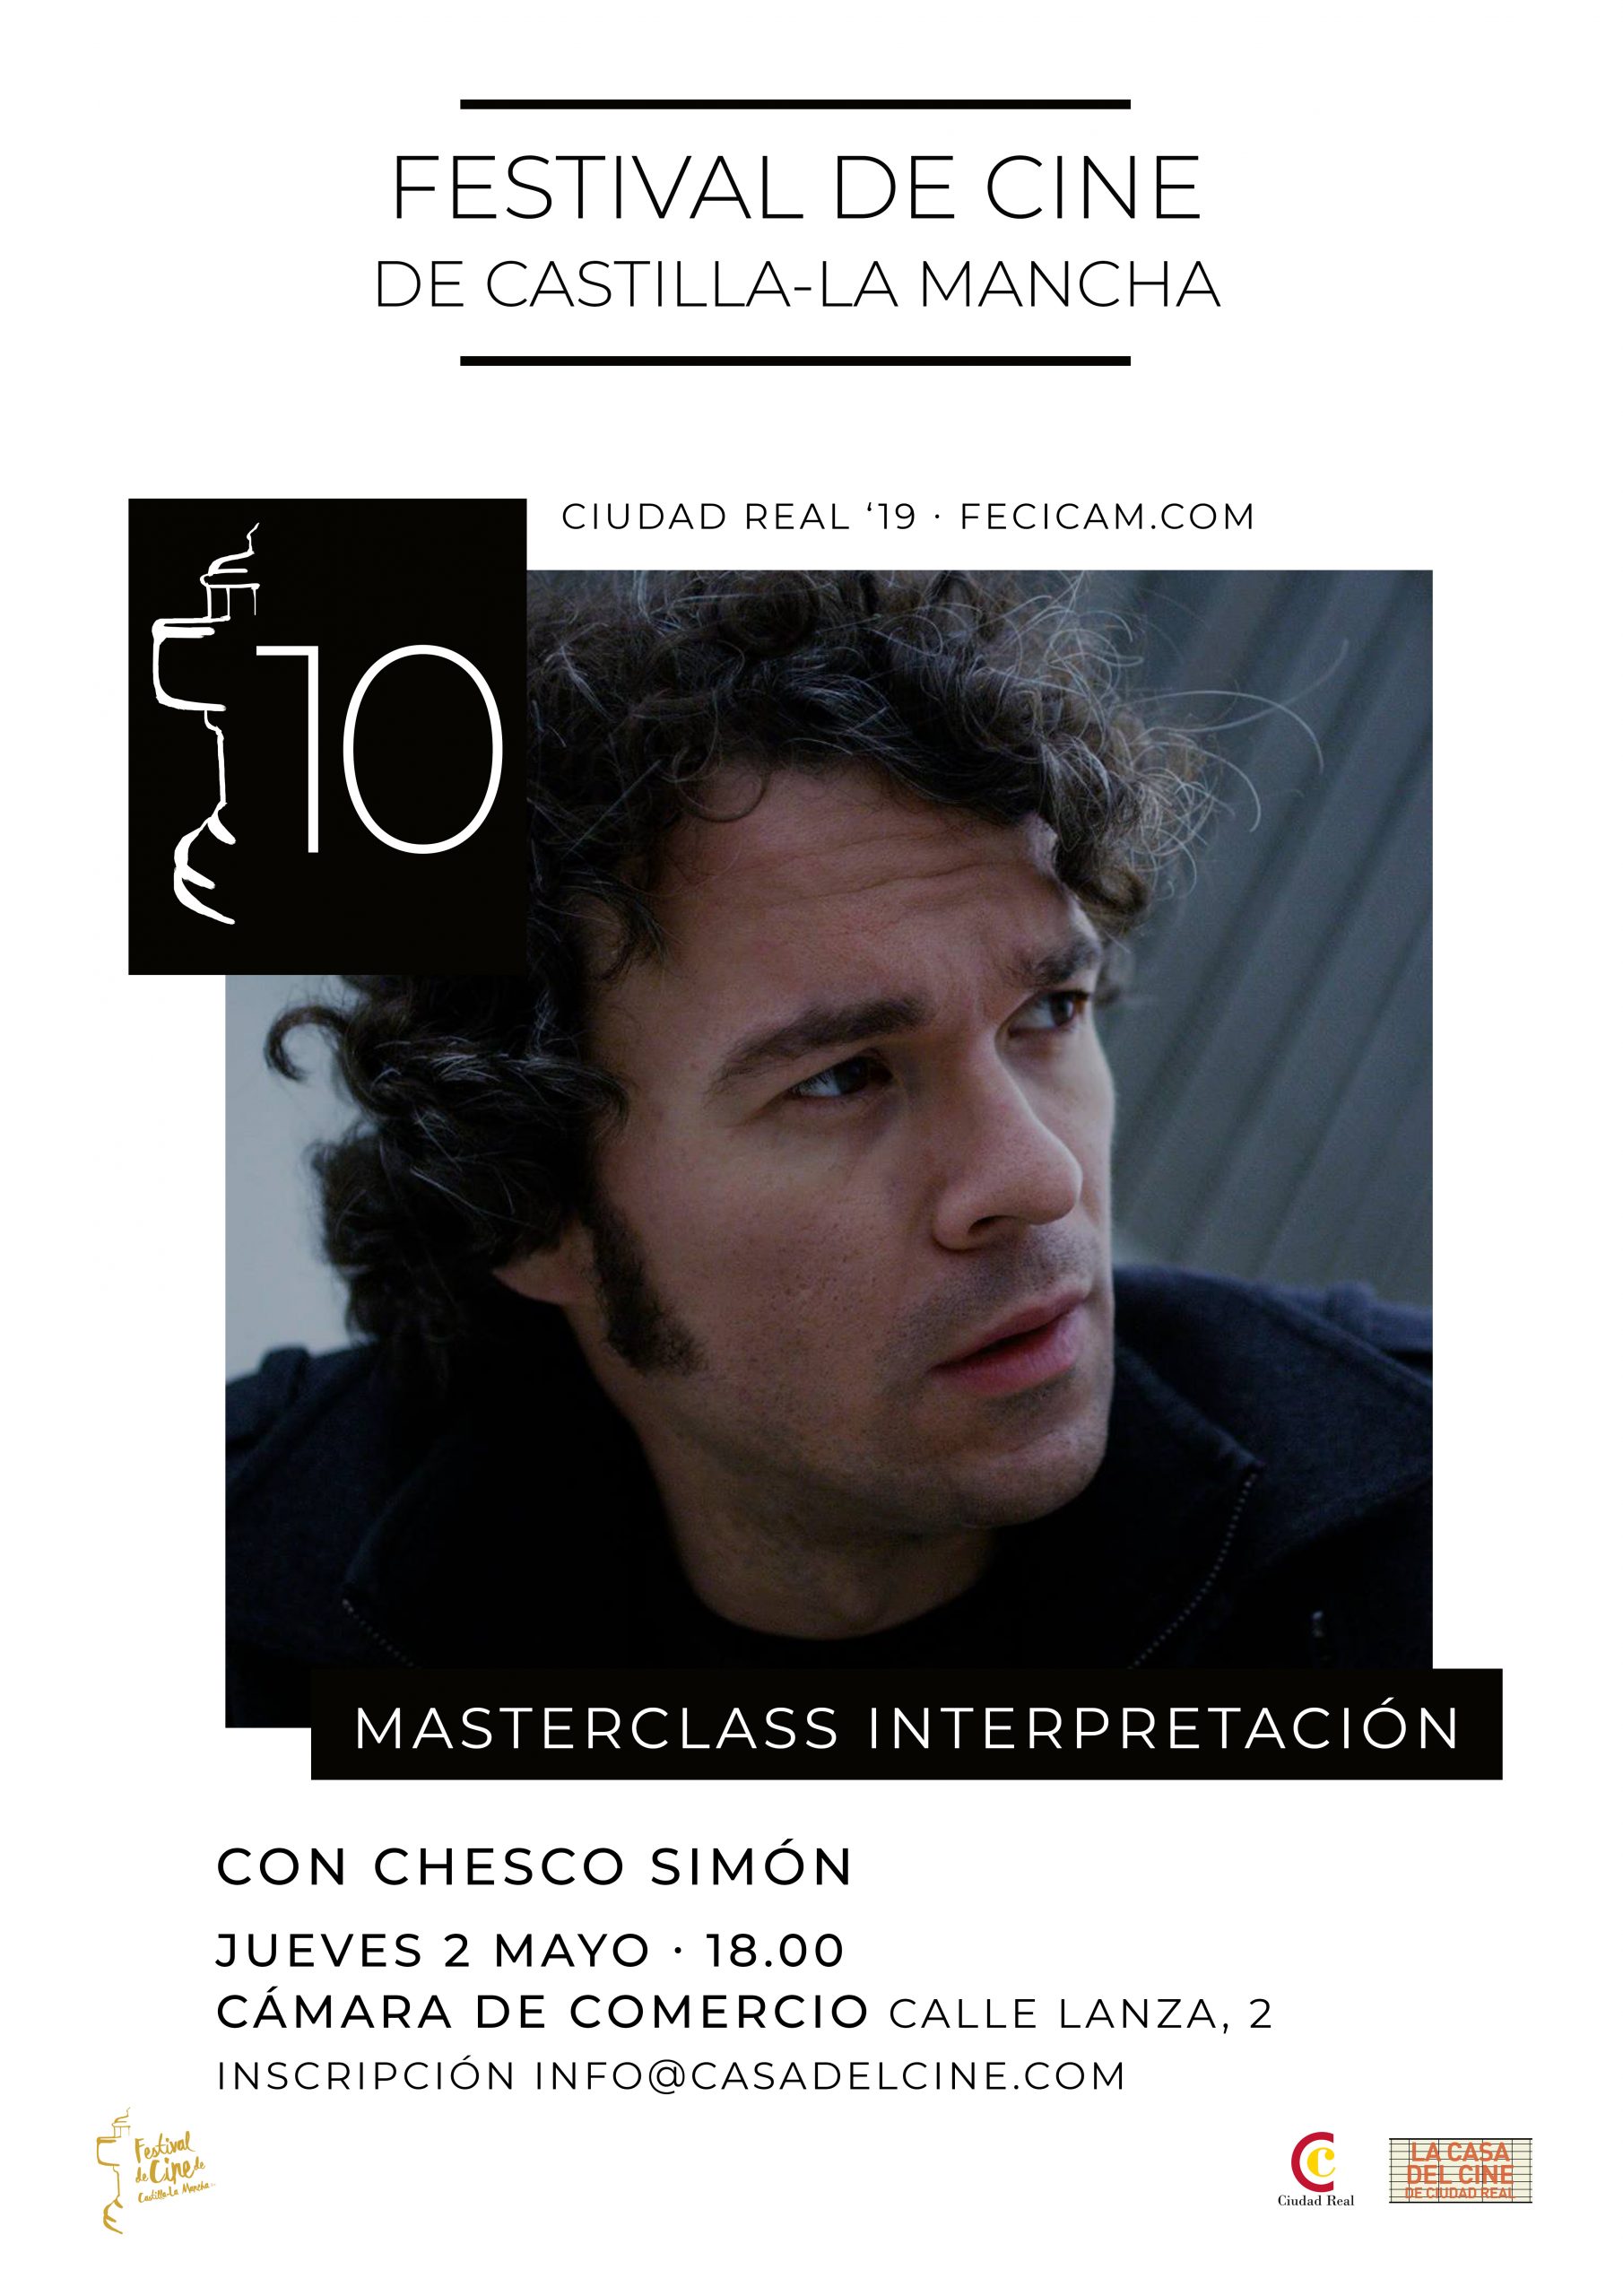 Masterclass de Interpretación con Chesco Simón